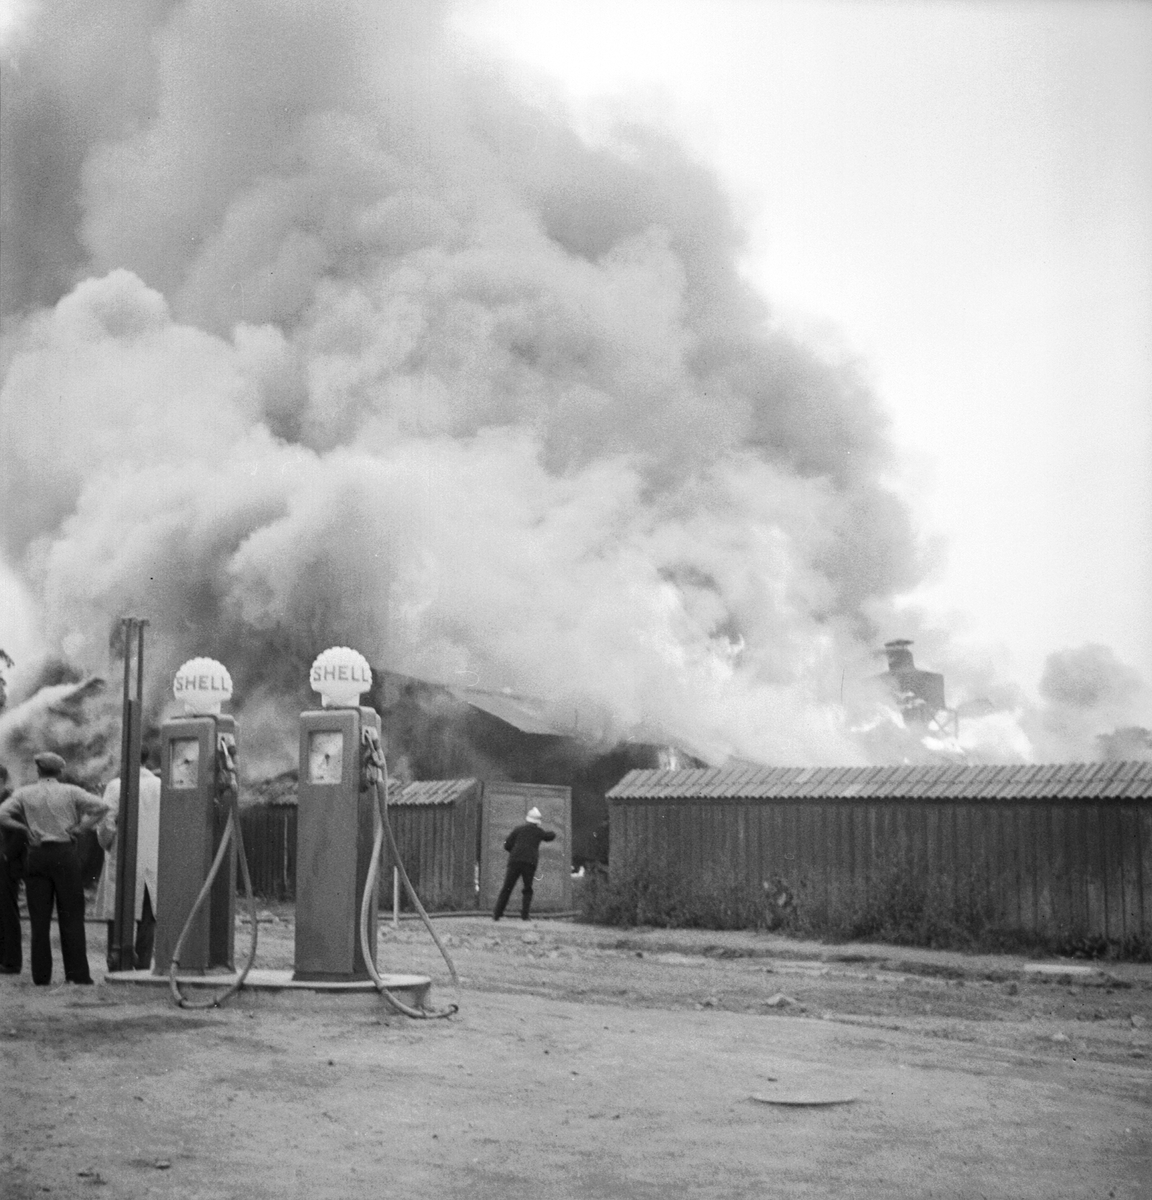 Hösten 1949 utbröt brand vid Carl Eriksson & Co trävaruhandel i Linköping. En av många industribränder som drabbat staden och enskilda företagare.